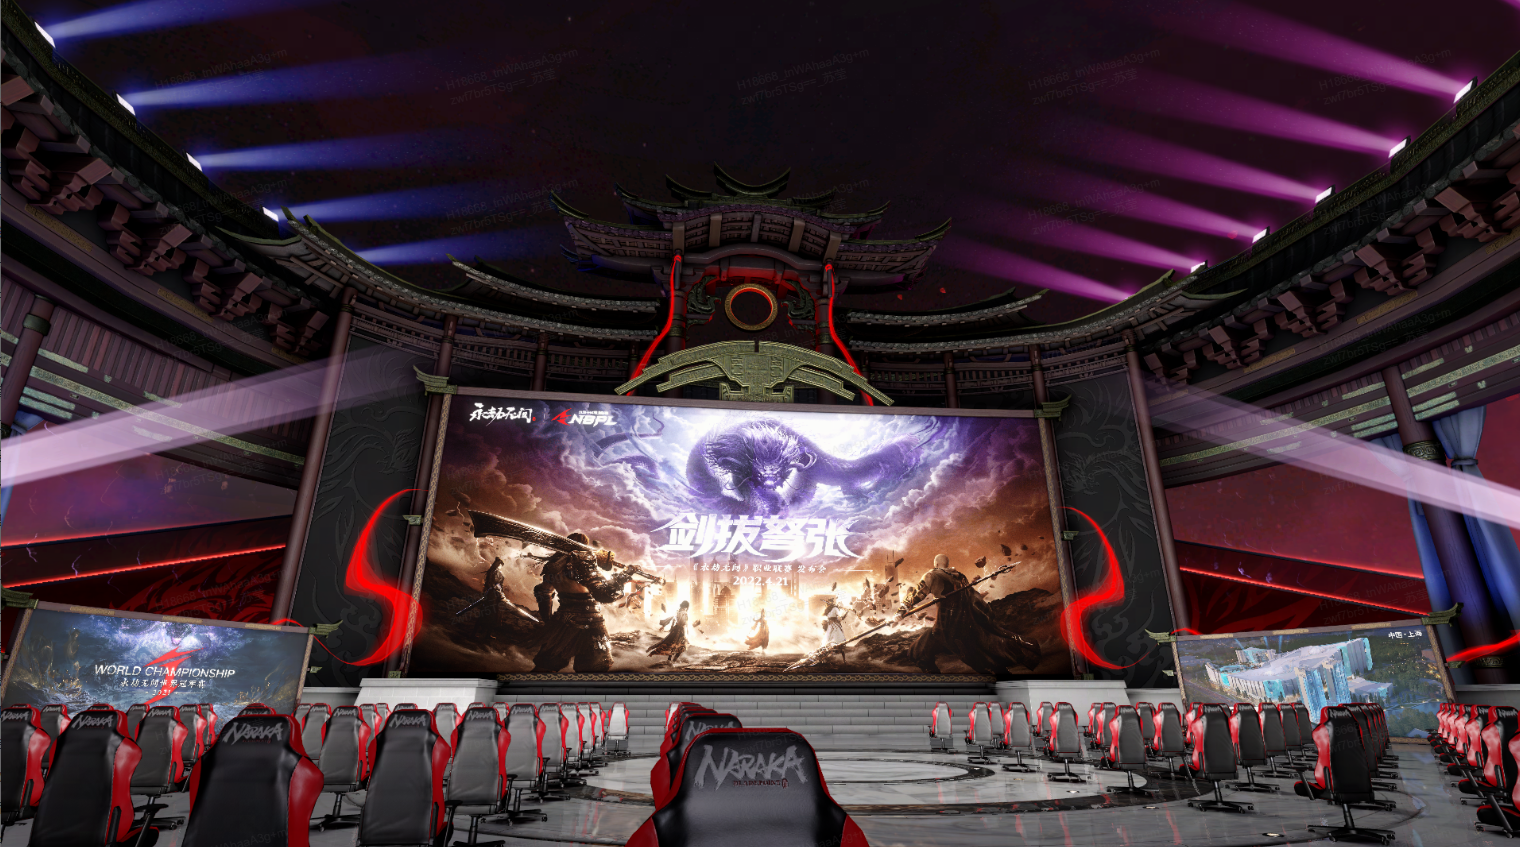 这是一张电子竞技比赛场馆的图片，有排列整齐的电脑椅，中央是大屏幕，背景有传统建筑元素，氛围现代且科技感十足。